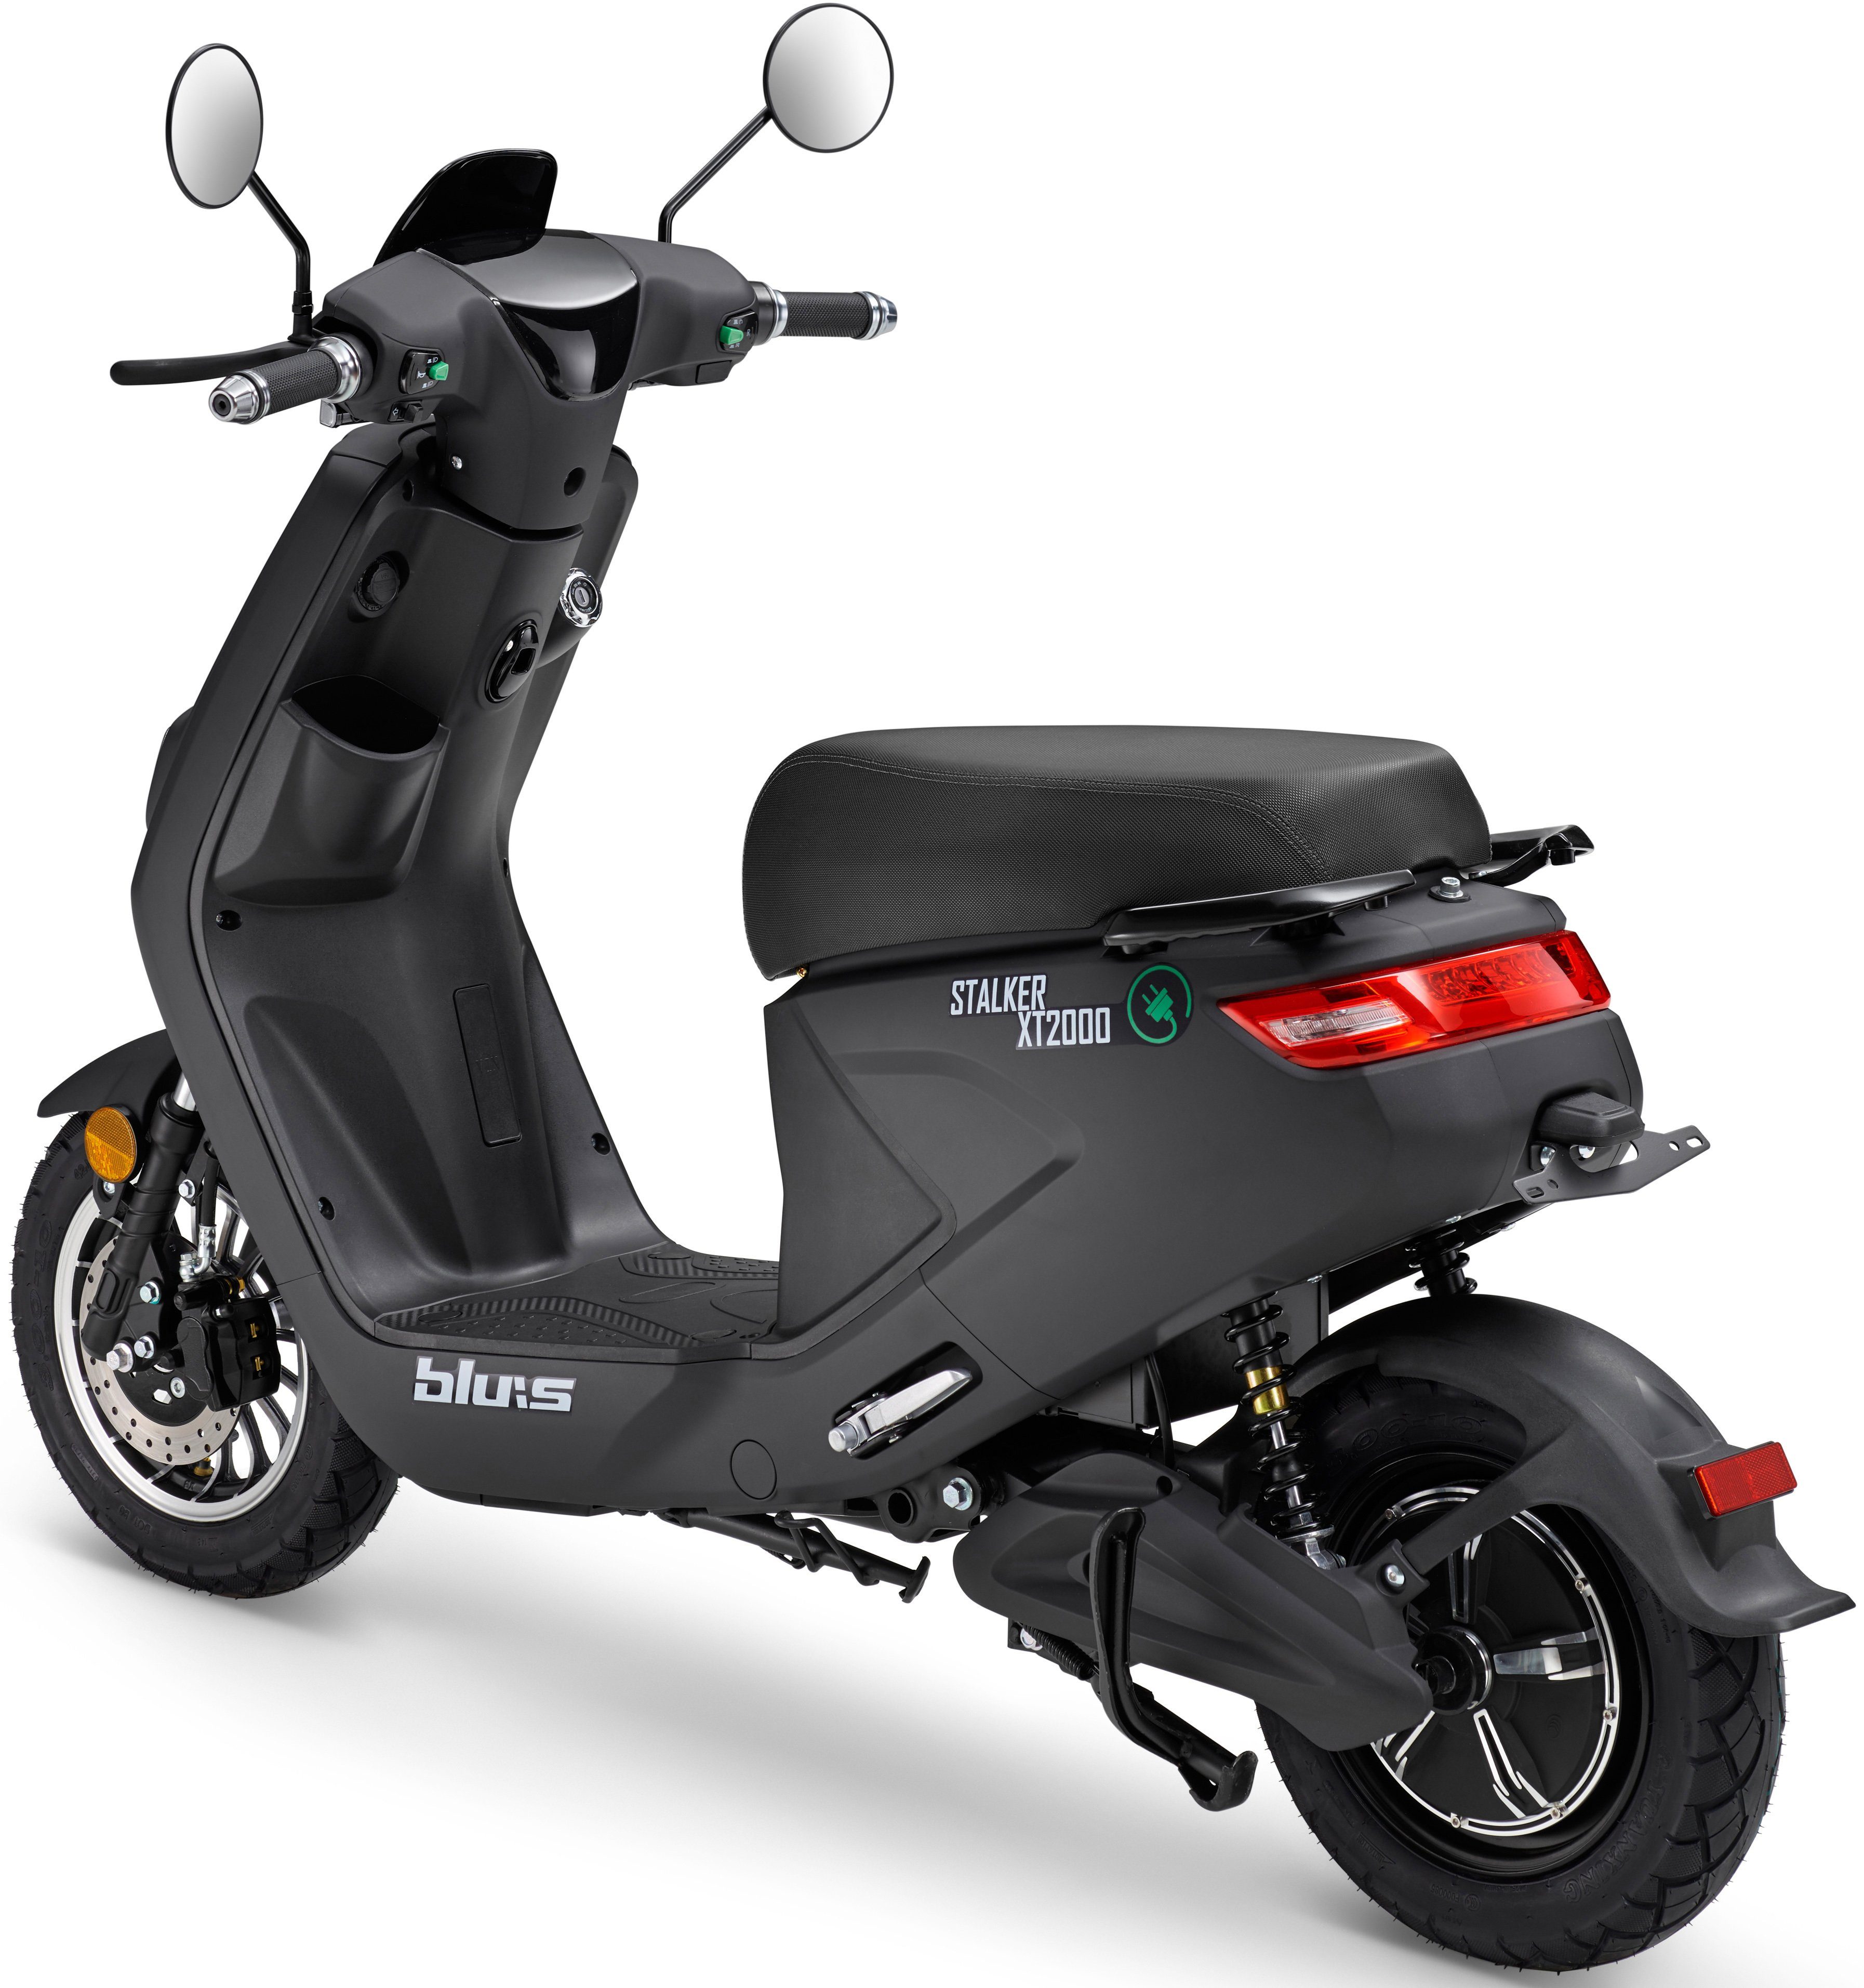 Blu:s E-Motorroller XT2000, 2000 km/h W, schwarz 45